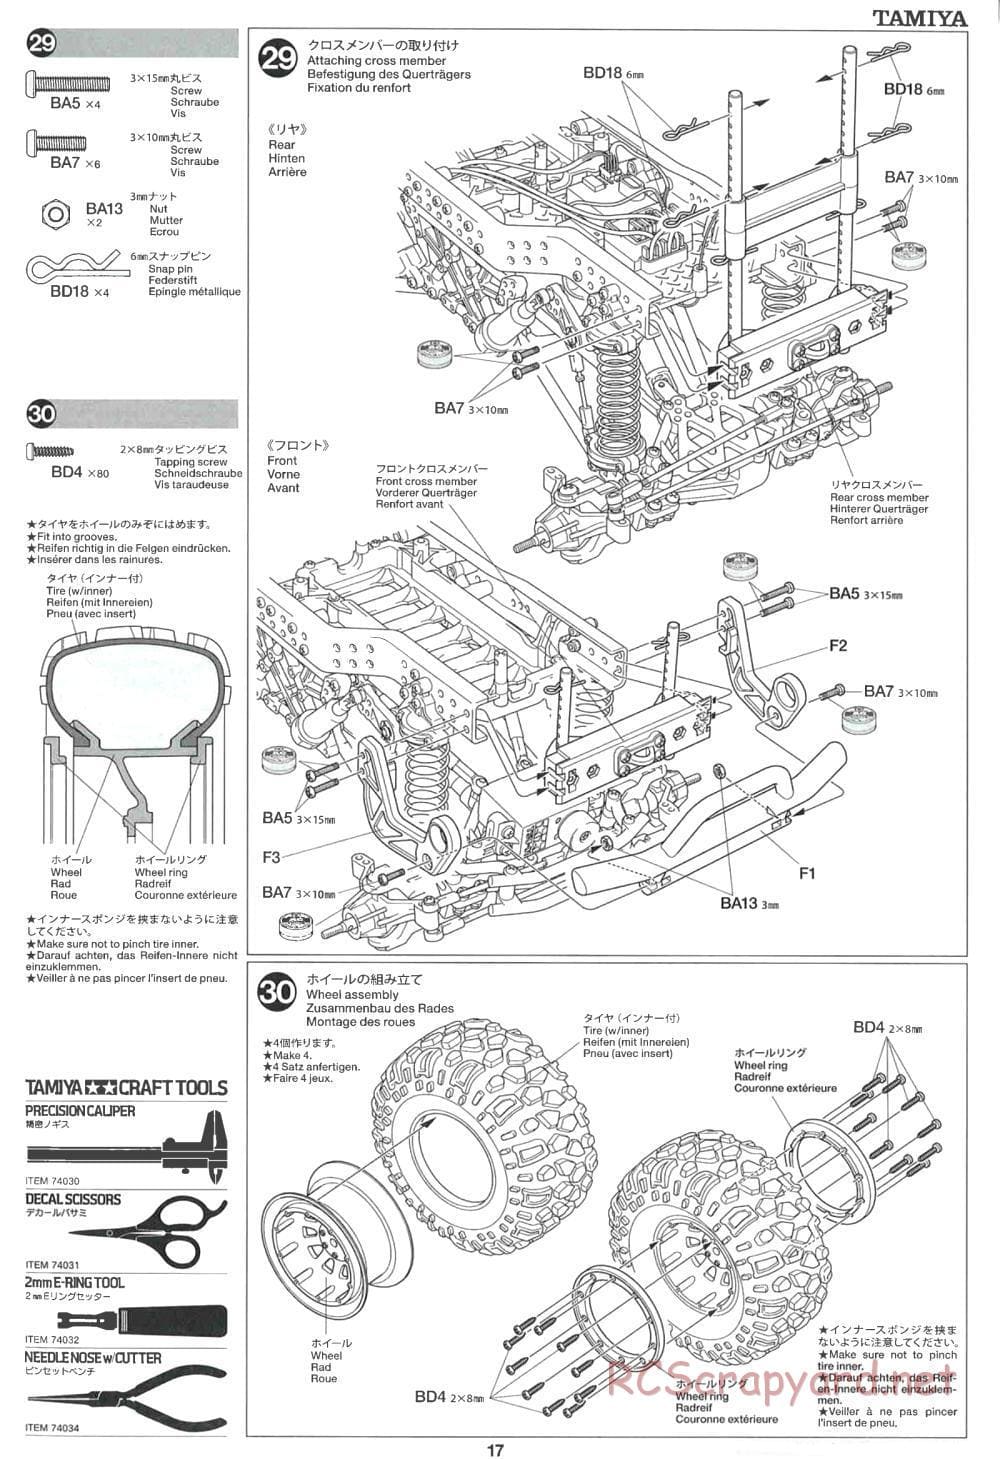 Tamiya - CR-01 Chassis - Manual - Page 17